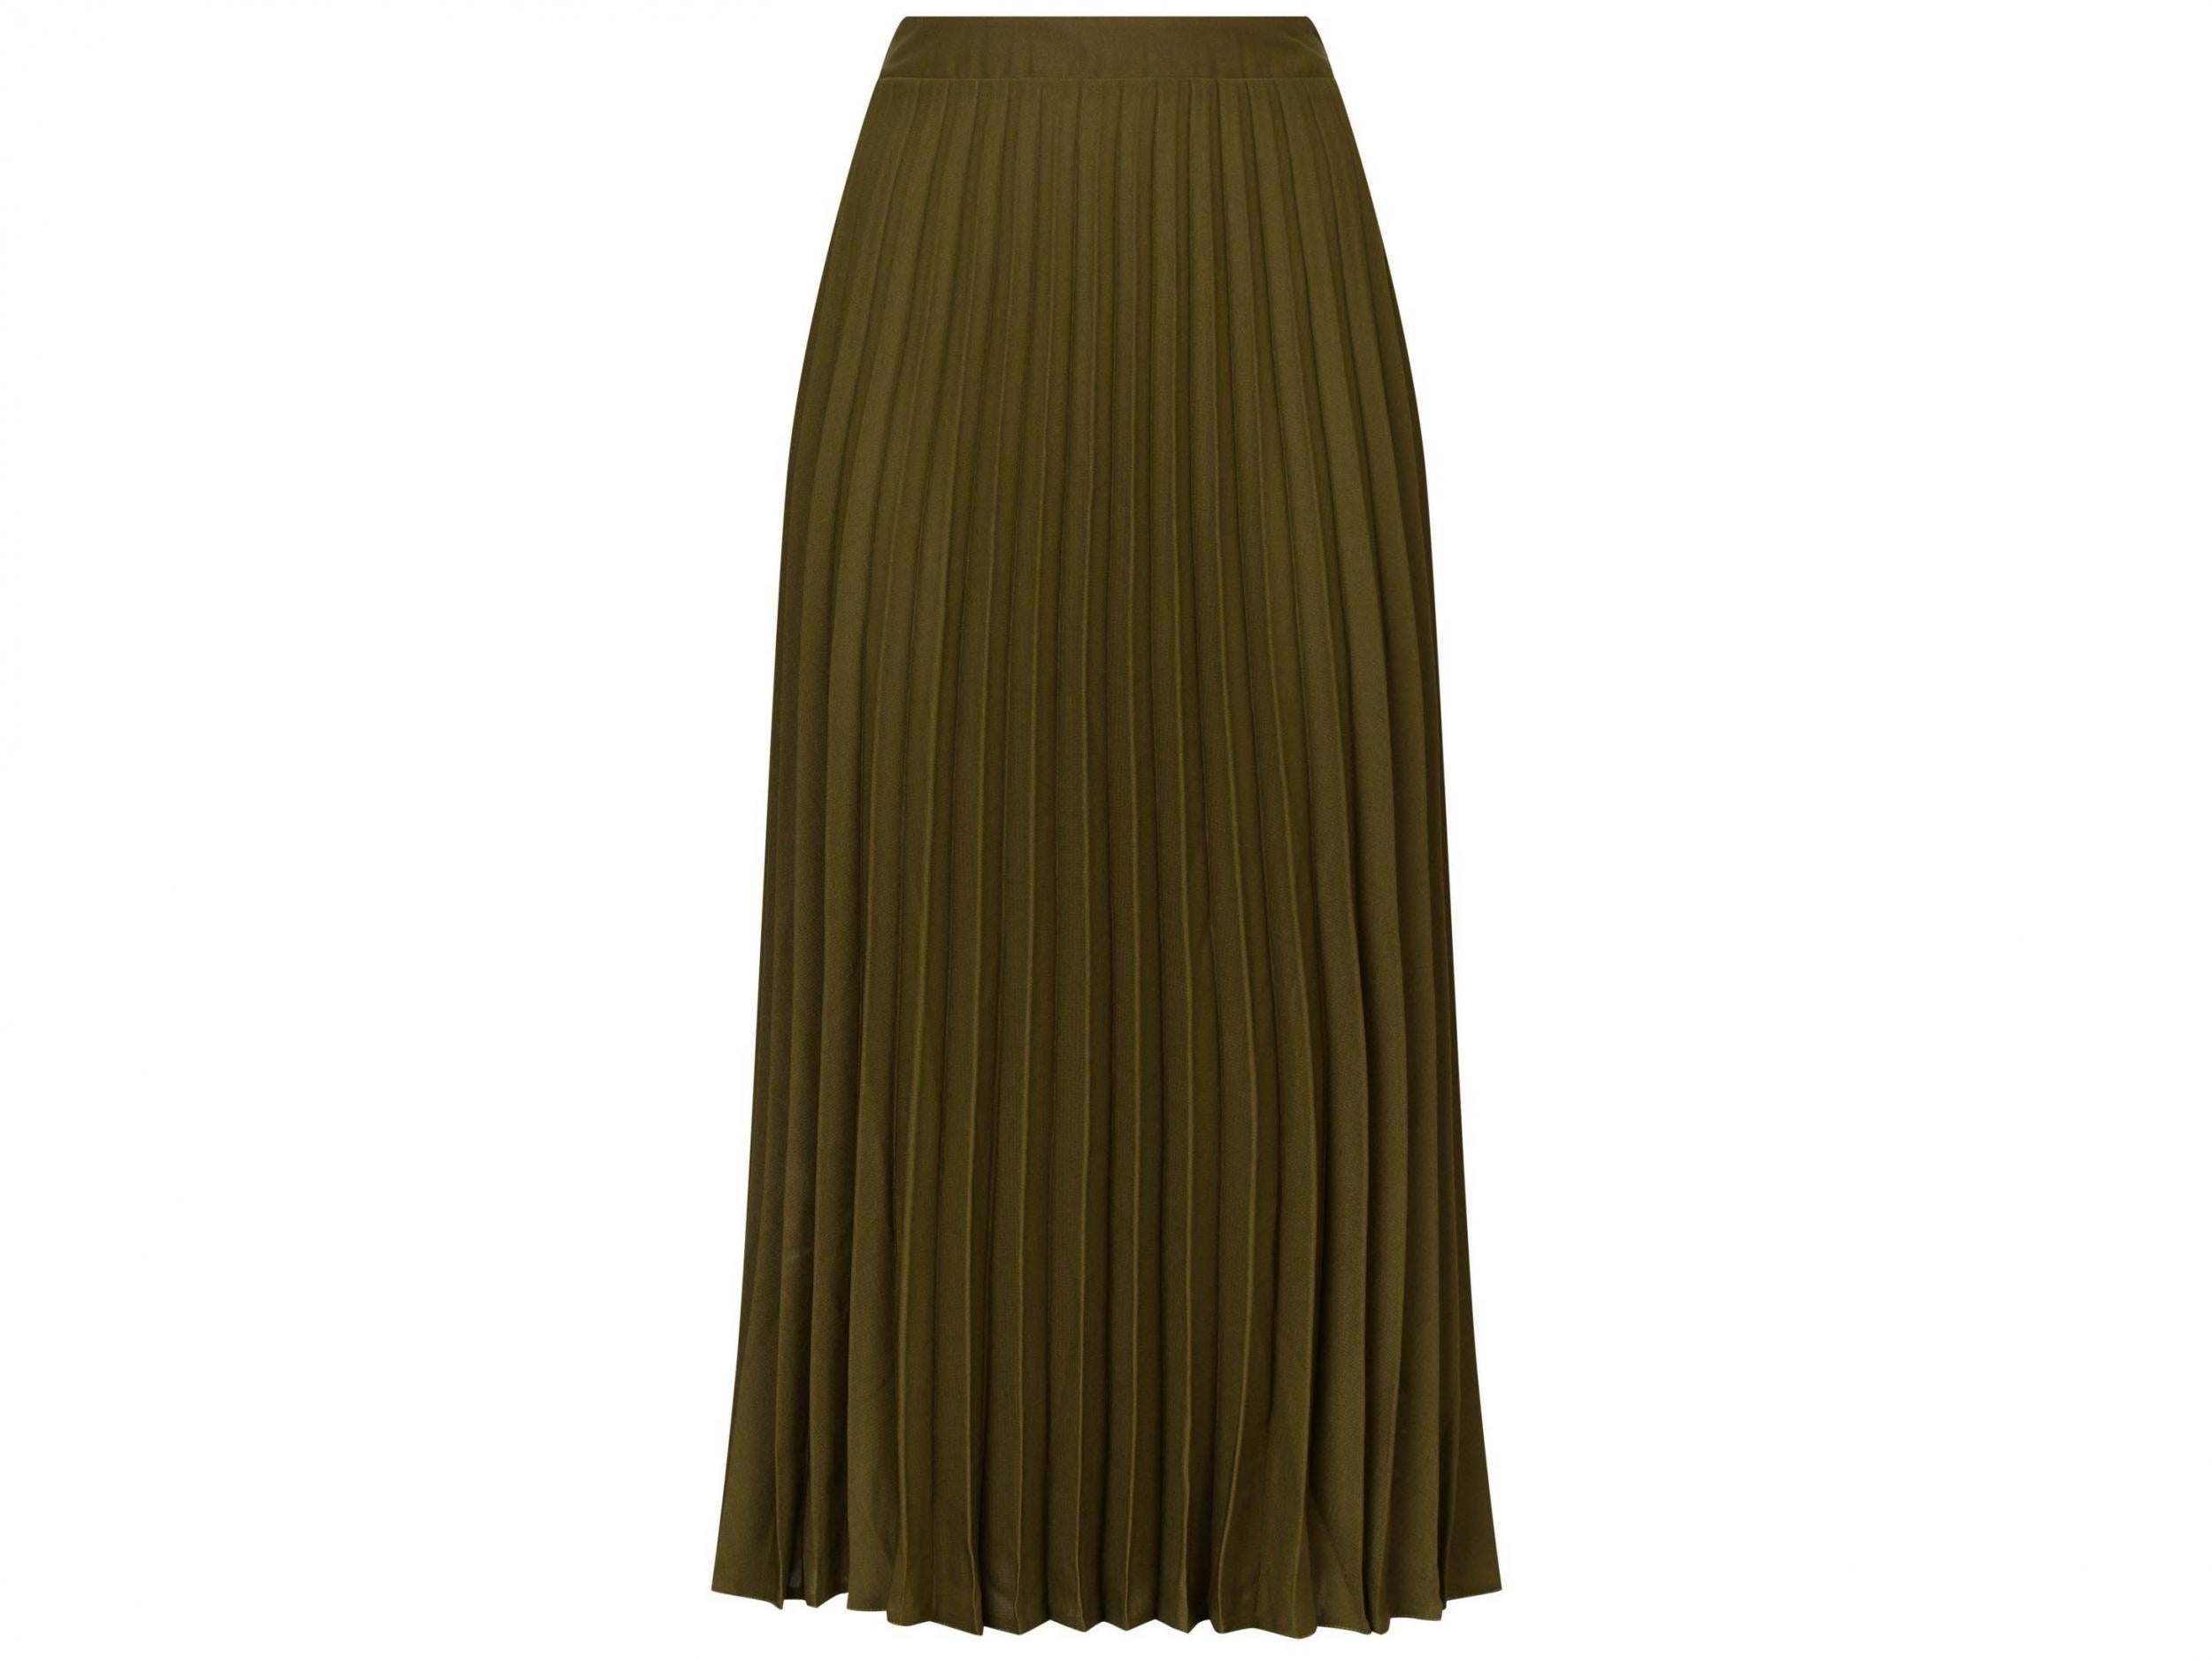 Khaki Pleated Midi Skirt, £19.99, New Look